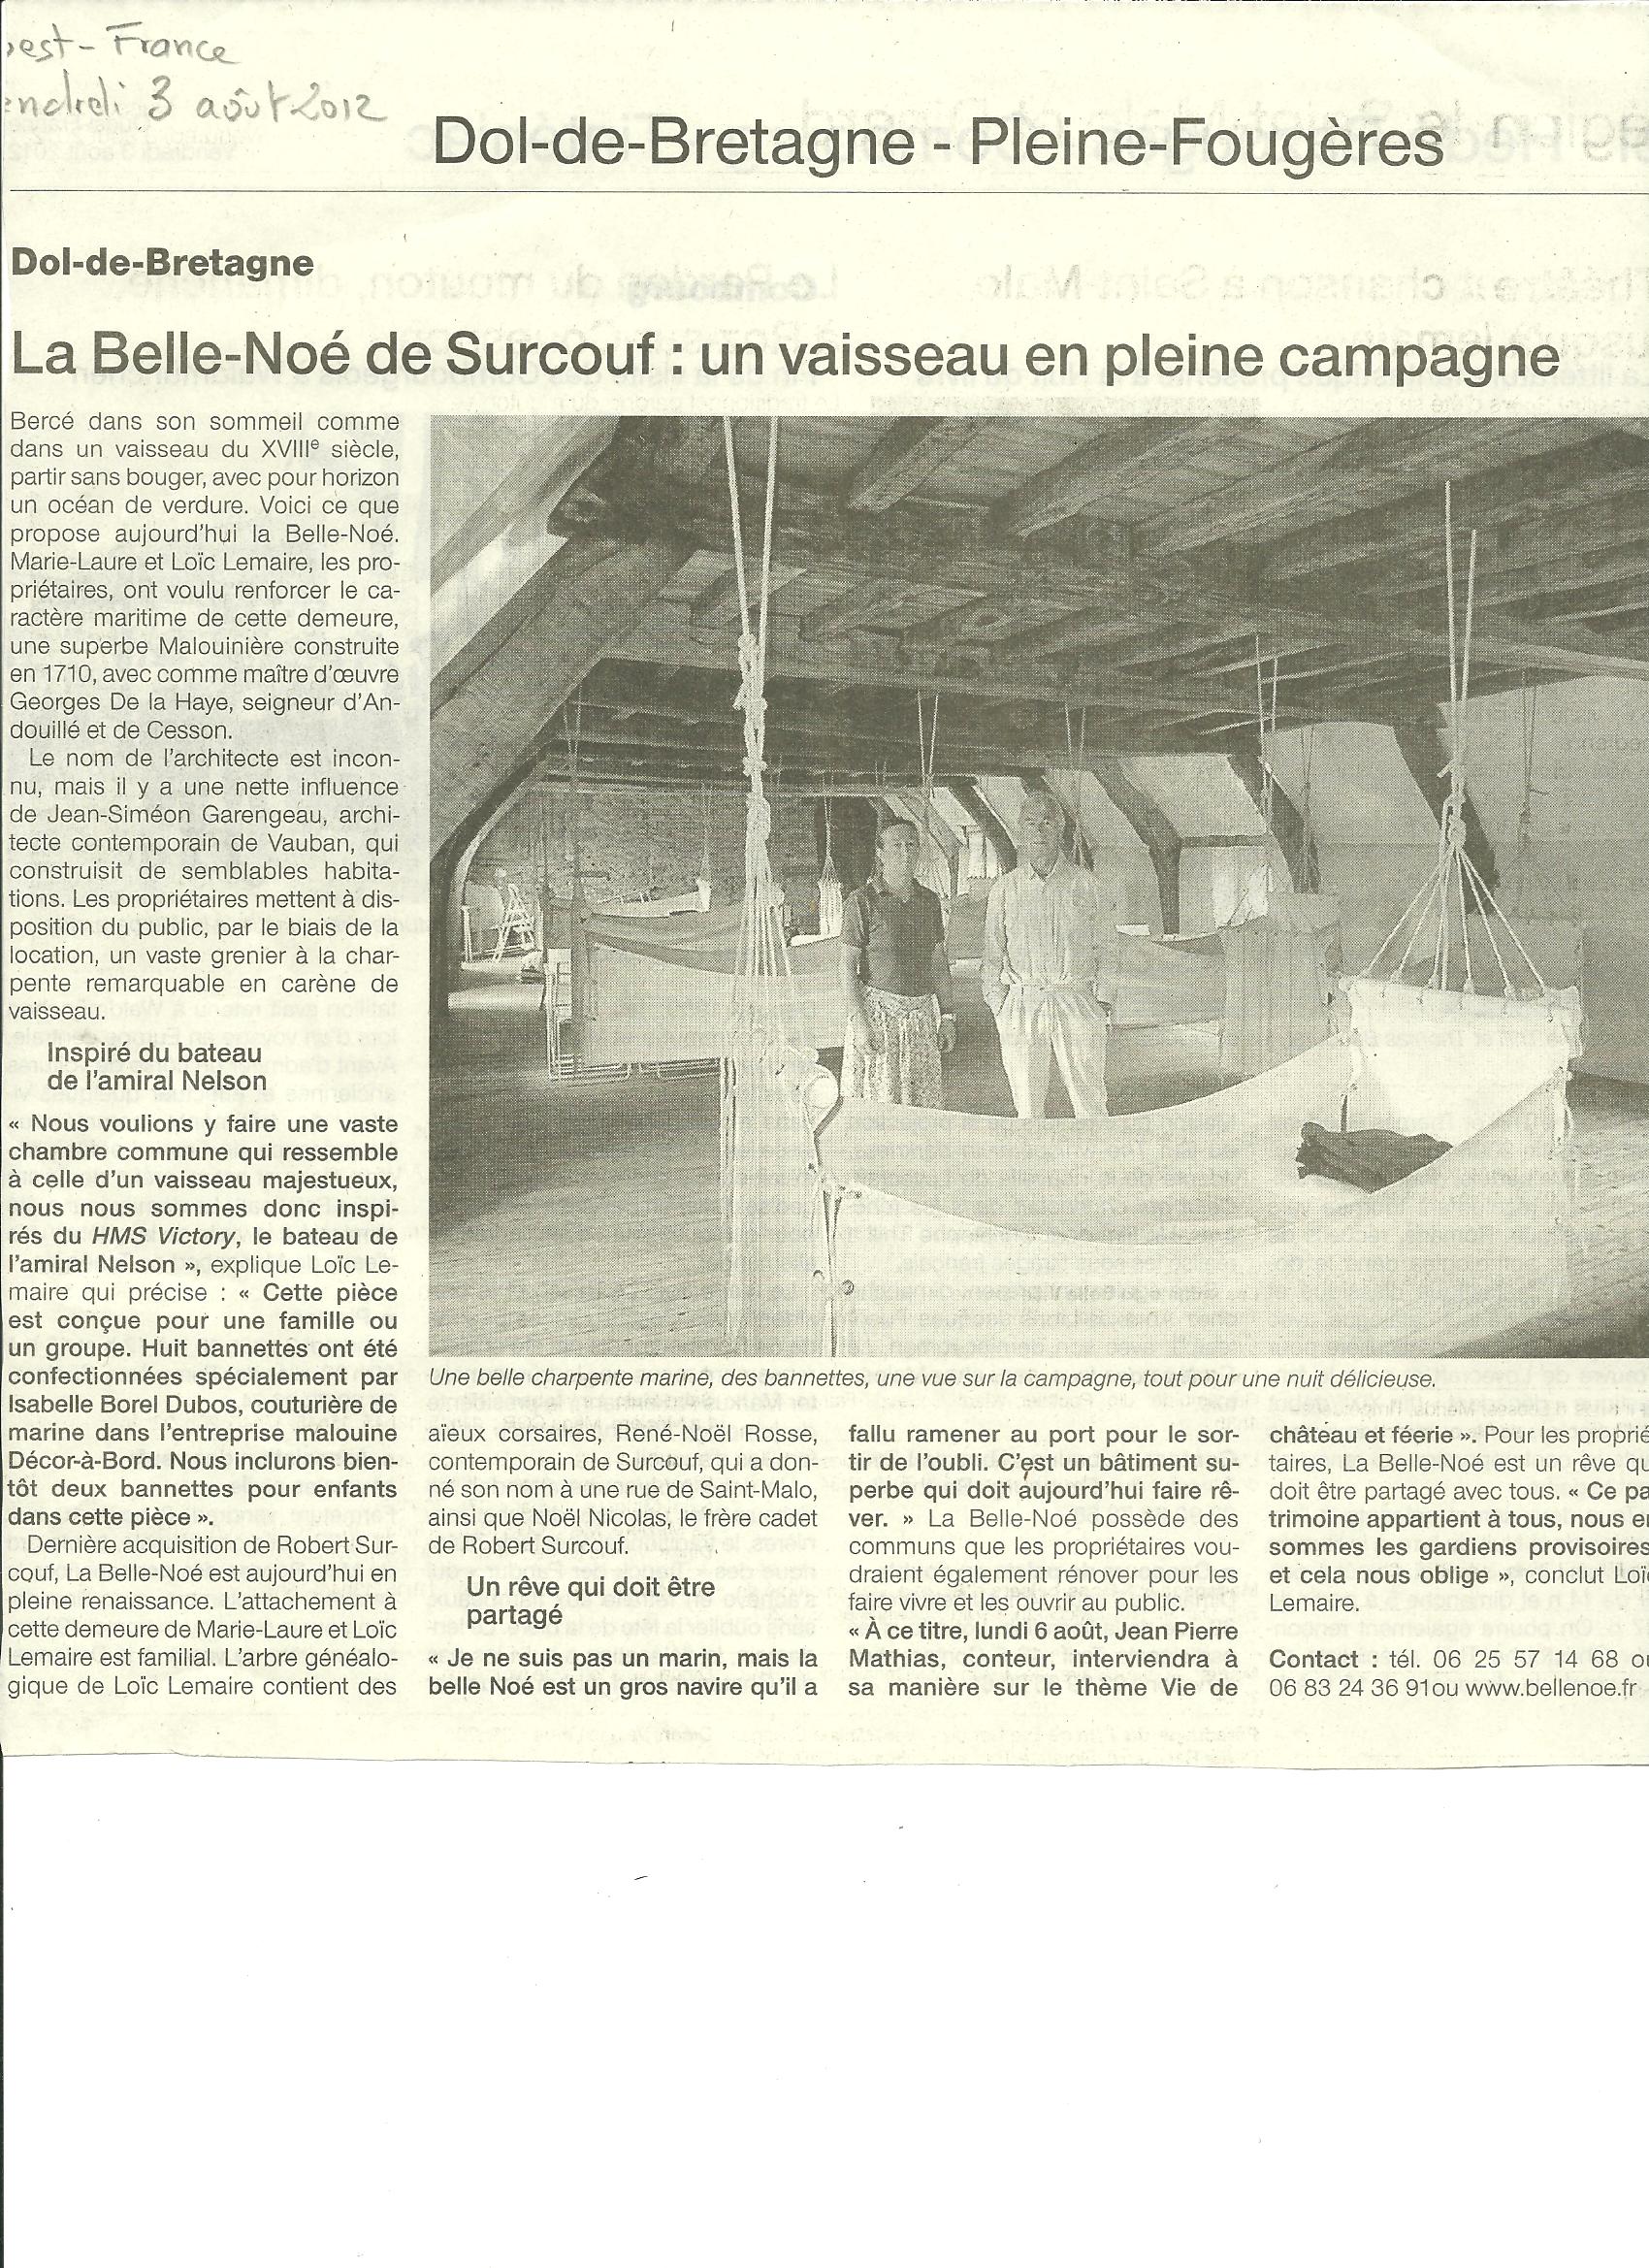 Le Ouest France consacre un article à Belle-Noë à l'occasion de l'inauguration du dortoir des officiers